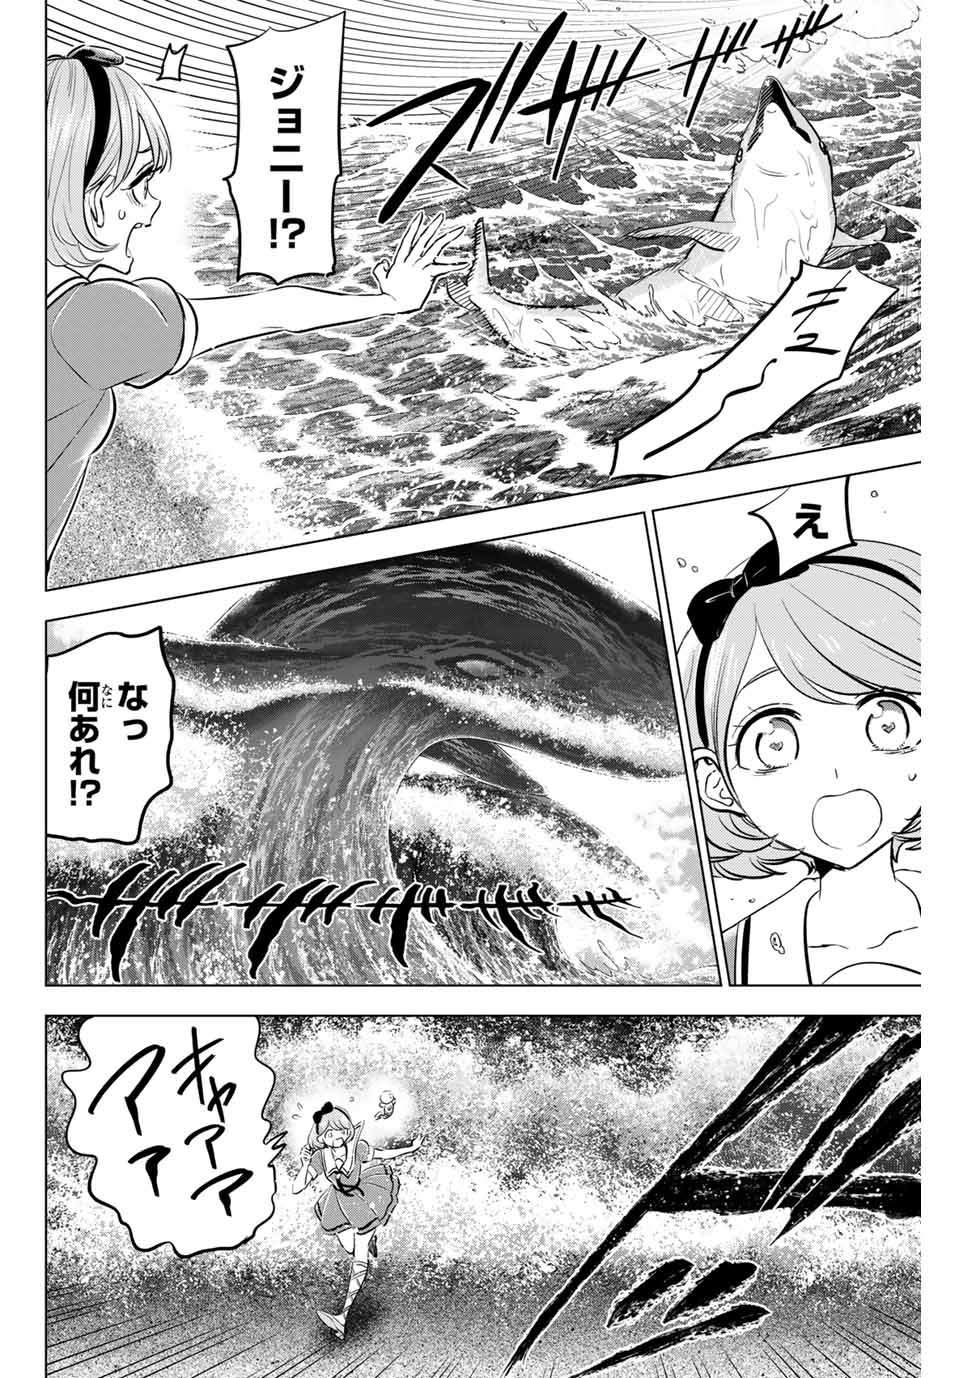 Kuroneko to Majo no Kyoushitsu - Chapter 48 - Page 2